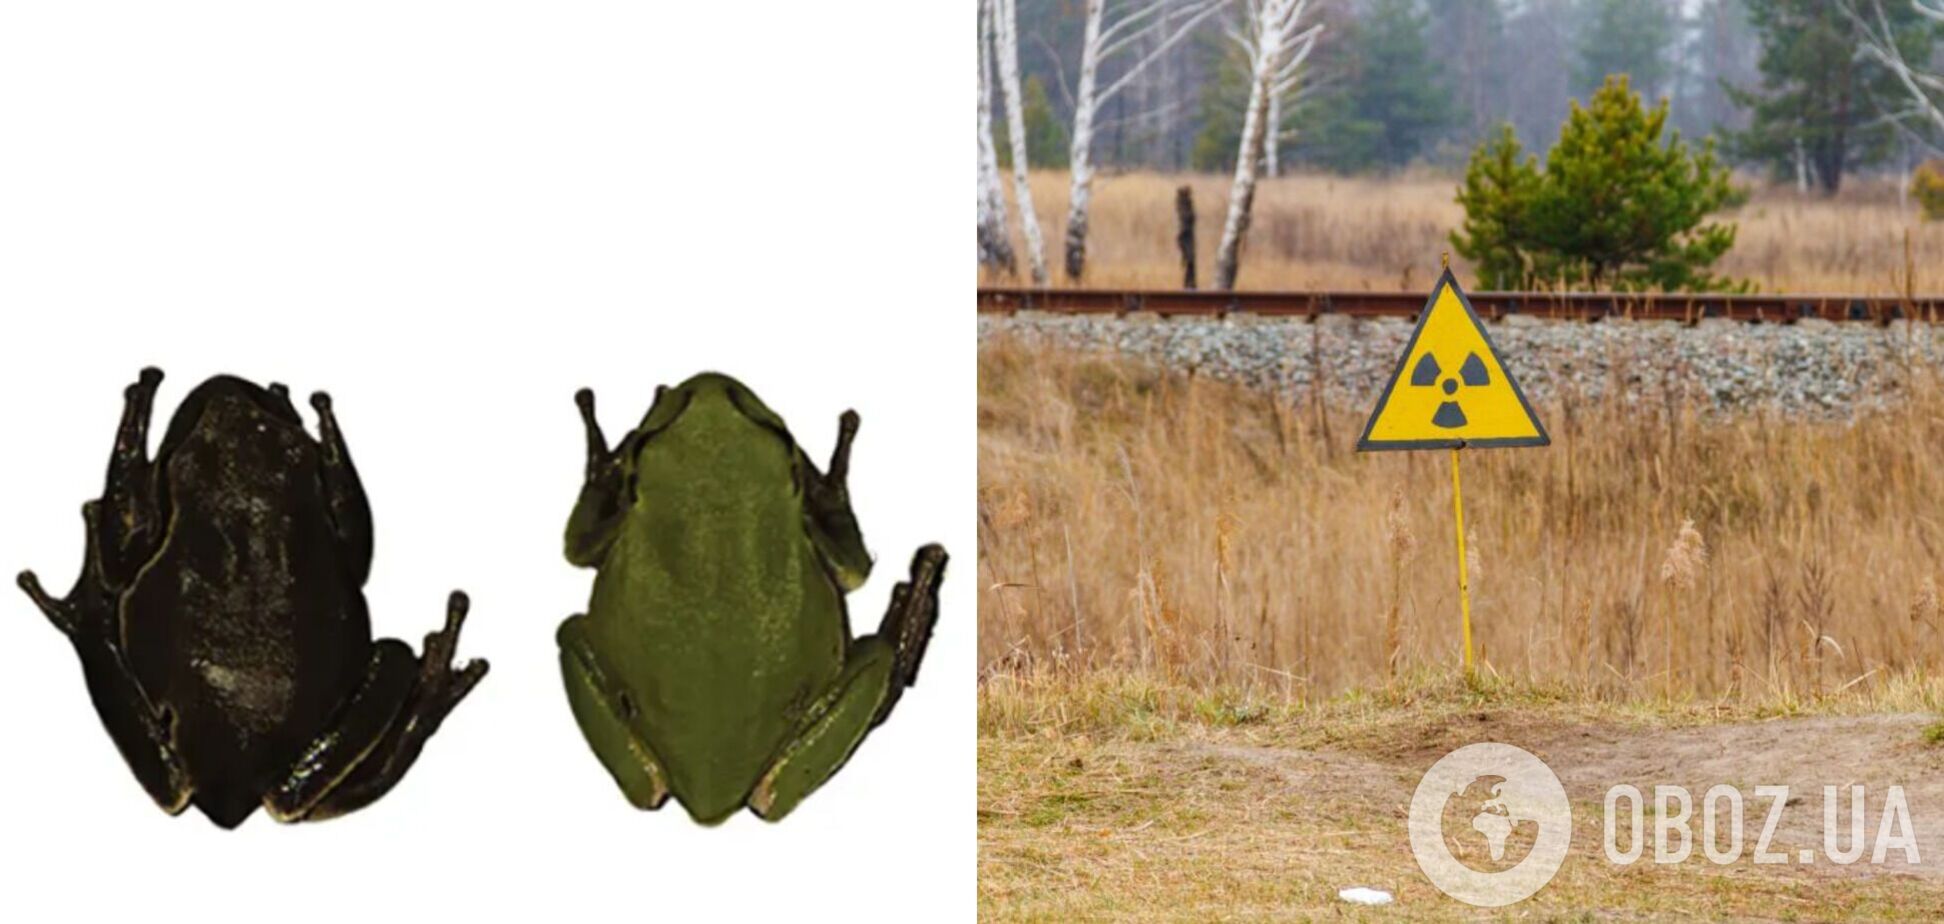 В Чернобыле нашли лягушек, которые мутировали для защиты от радиации. Фото